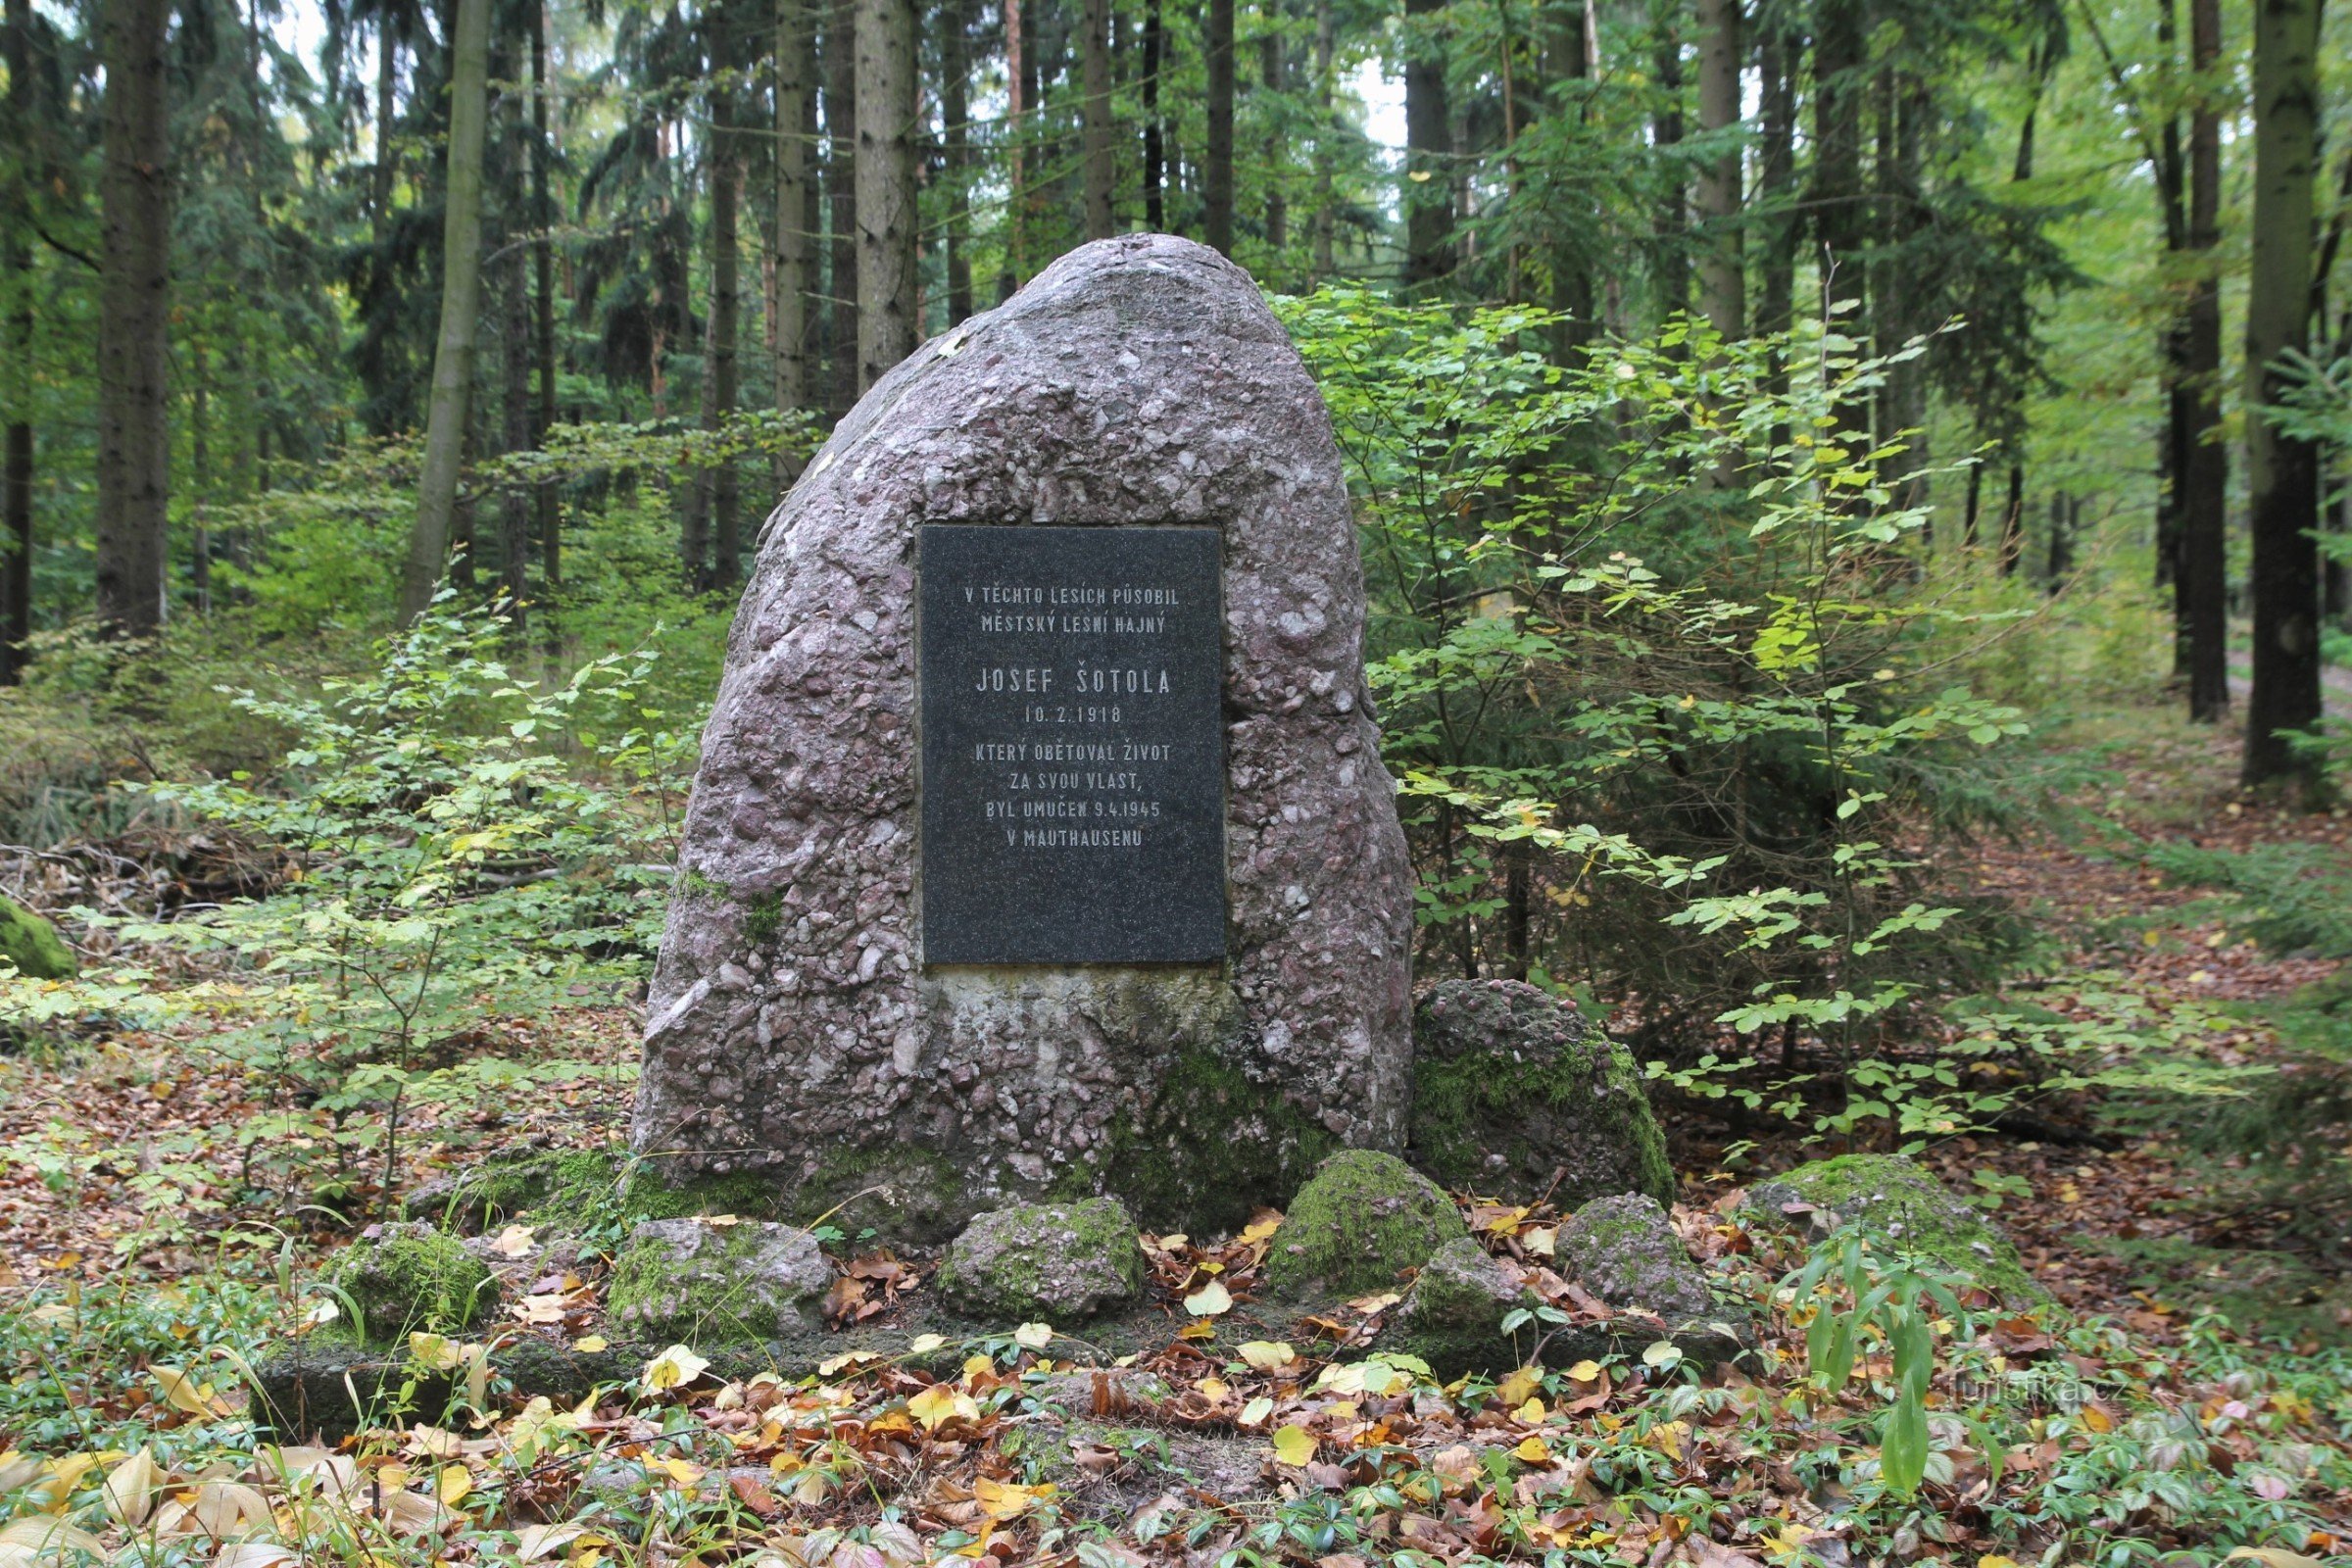 Memorialul lui Josef Šotola este situat pe o mică poiană